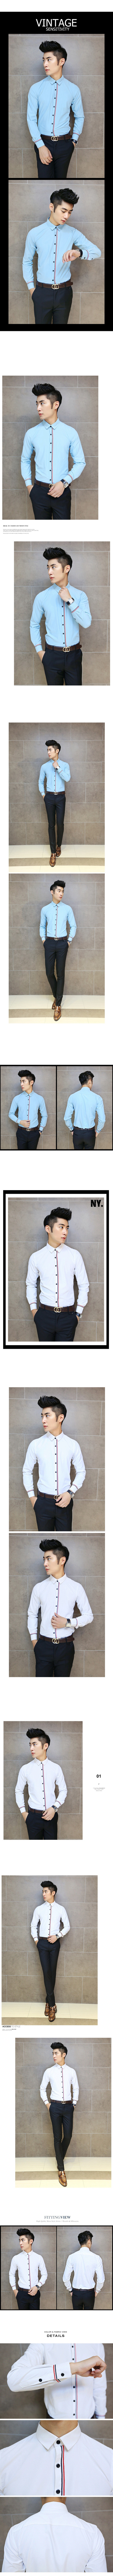 Mssefn 2014秋冬新款 韩版英伦时尚 个性设计 竹纤维面料 男士修身多色长袖衬衫T24